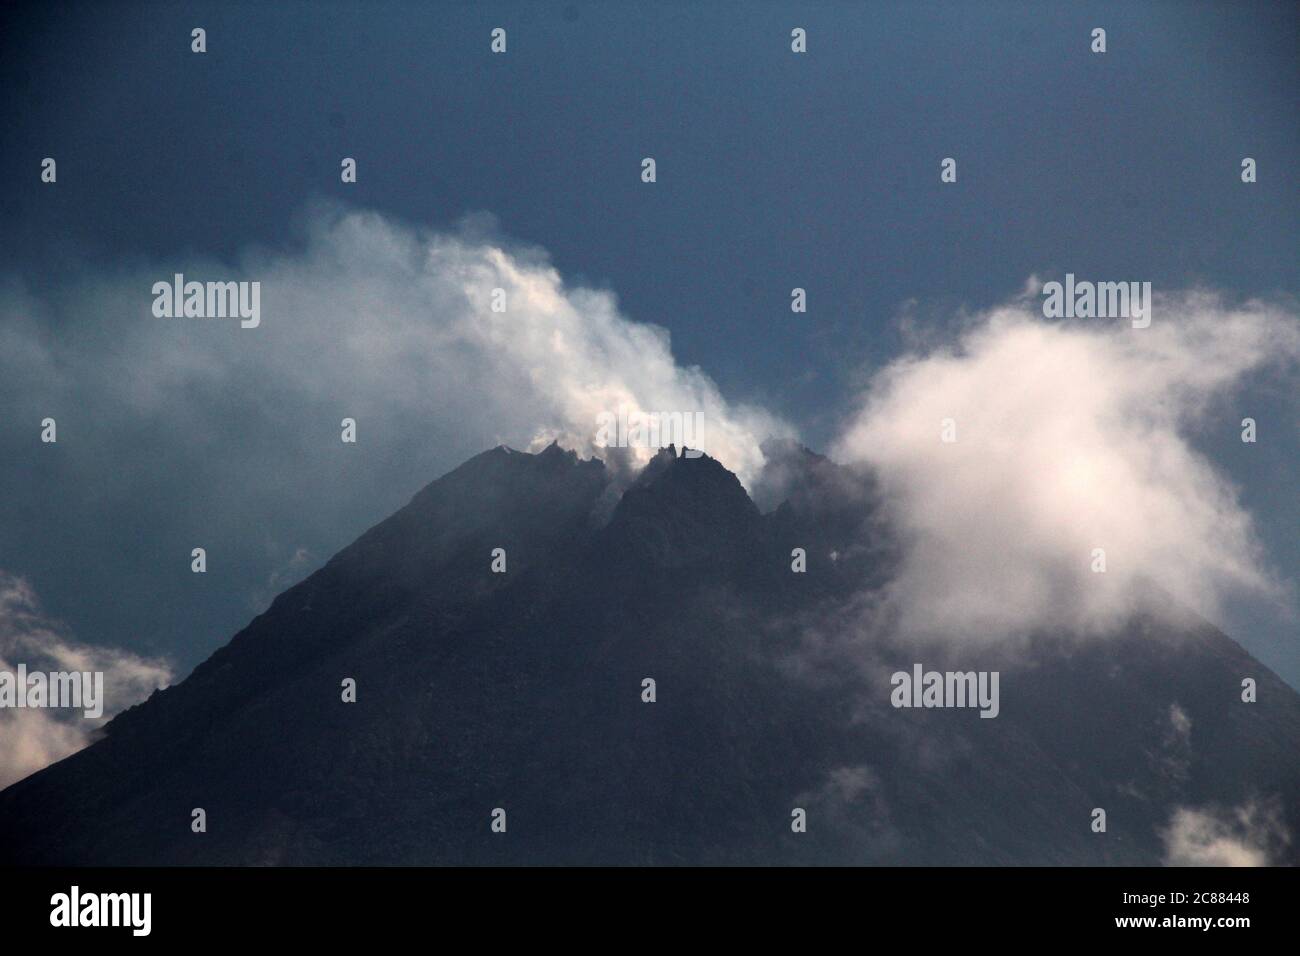 22 luglio 2020, Sleman, YOGYAKARTA, INDONESIA: Il Monte Merapi si vede a Sleman, Yogyakarta, Indonesia emette fumo sulfatara martedì 22 luglio 2020. Secondo le informazioni dell'Agenzia di ricerca e sviluppo geologico indonesiana (BPPTKG) 22 luglio 2020, il Monte Merapi ha sofferto di 18 ibridi, ampiezza 2-7 mm, SP : 0.3-0.41 secondi, quantità vulcanica superficiale: 2, ampiezza: 27-70 mm, durata: 8.04-10.64 secondi) Tecnonics locale (quantità: 1, ampiezza: 2 mm, SP: 1.24 secondi, accreditamento: ZUMA Press, Inc./Alamy Live News accreditamento: ZUMA Press, Inc./Alamy Live News Foto Stock